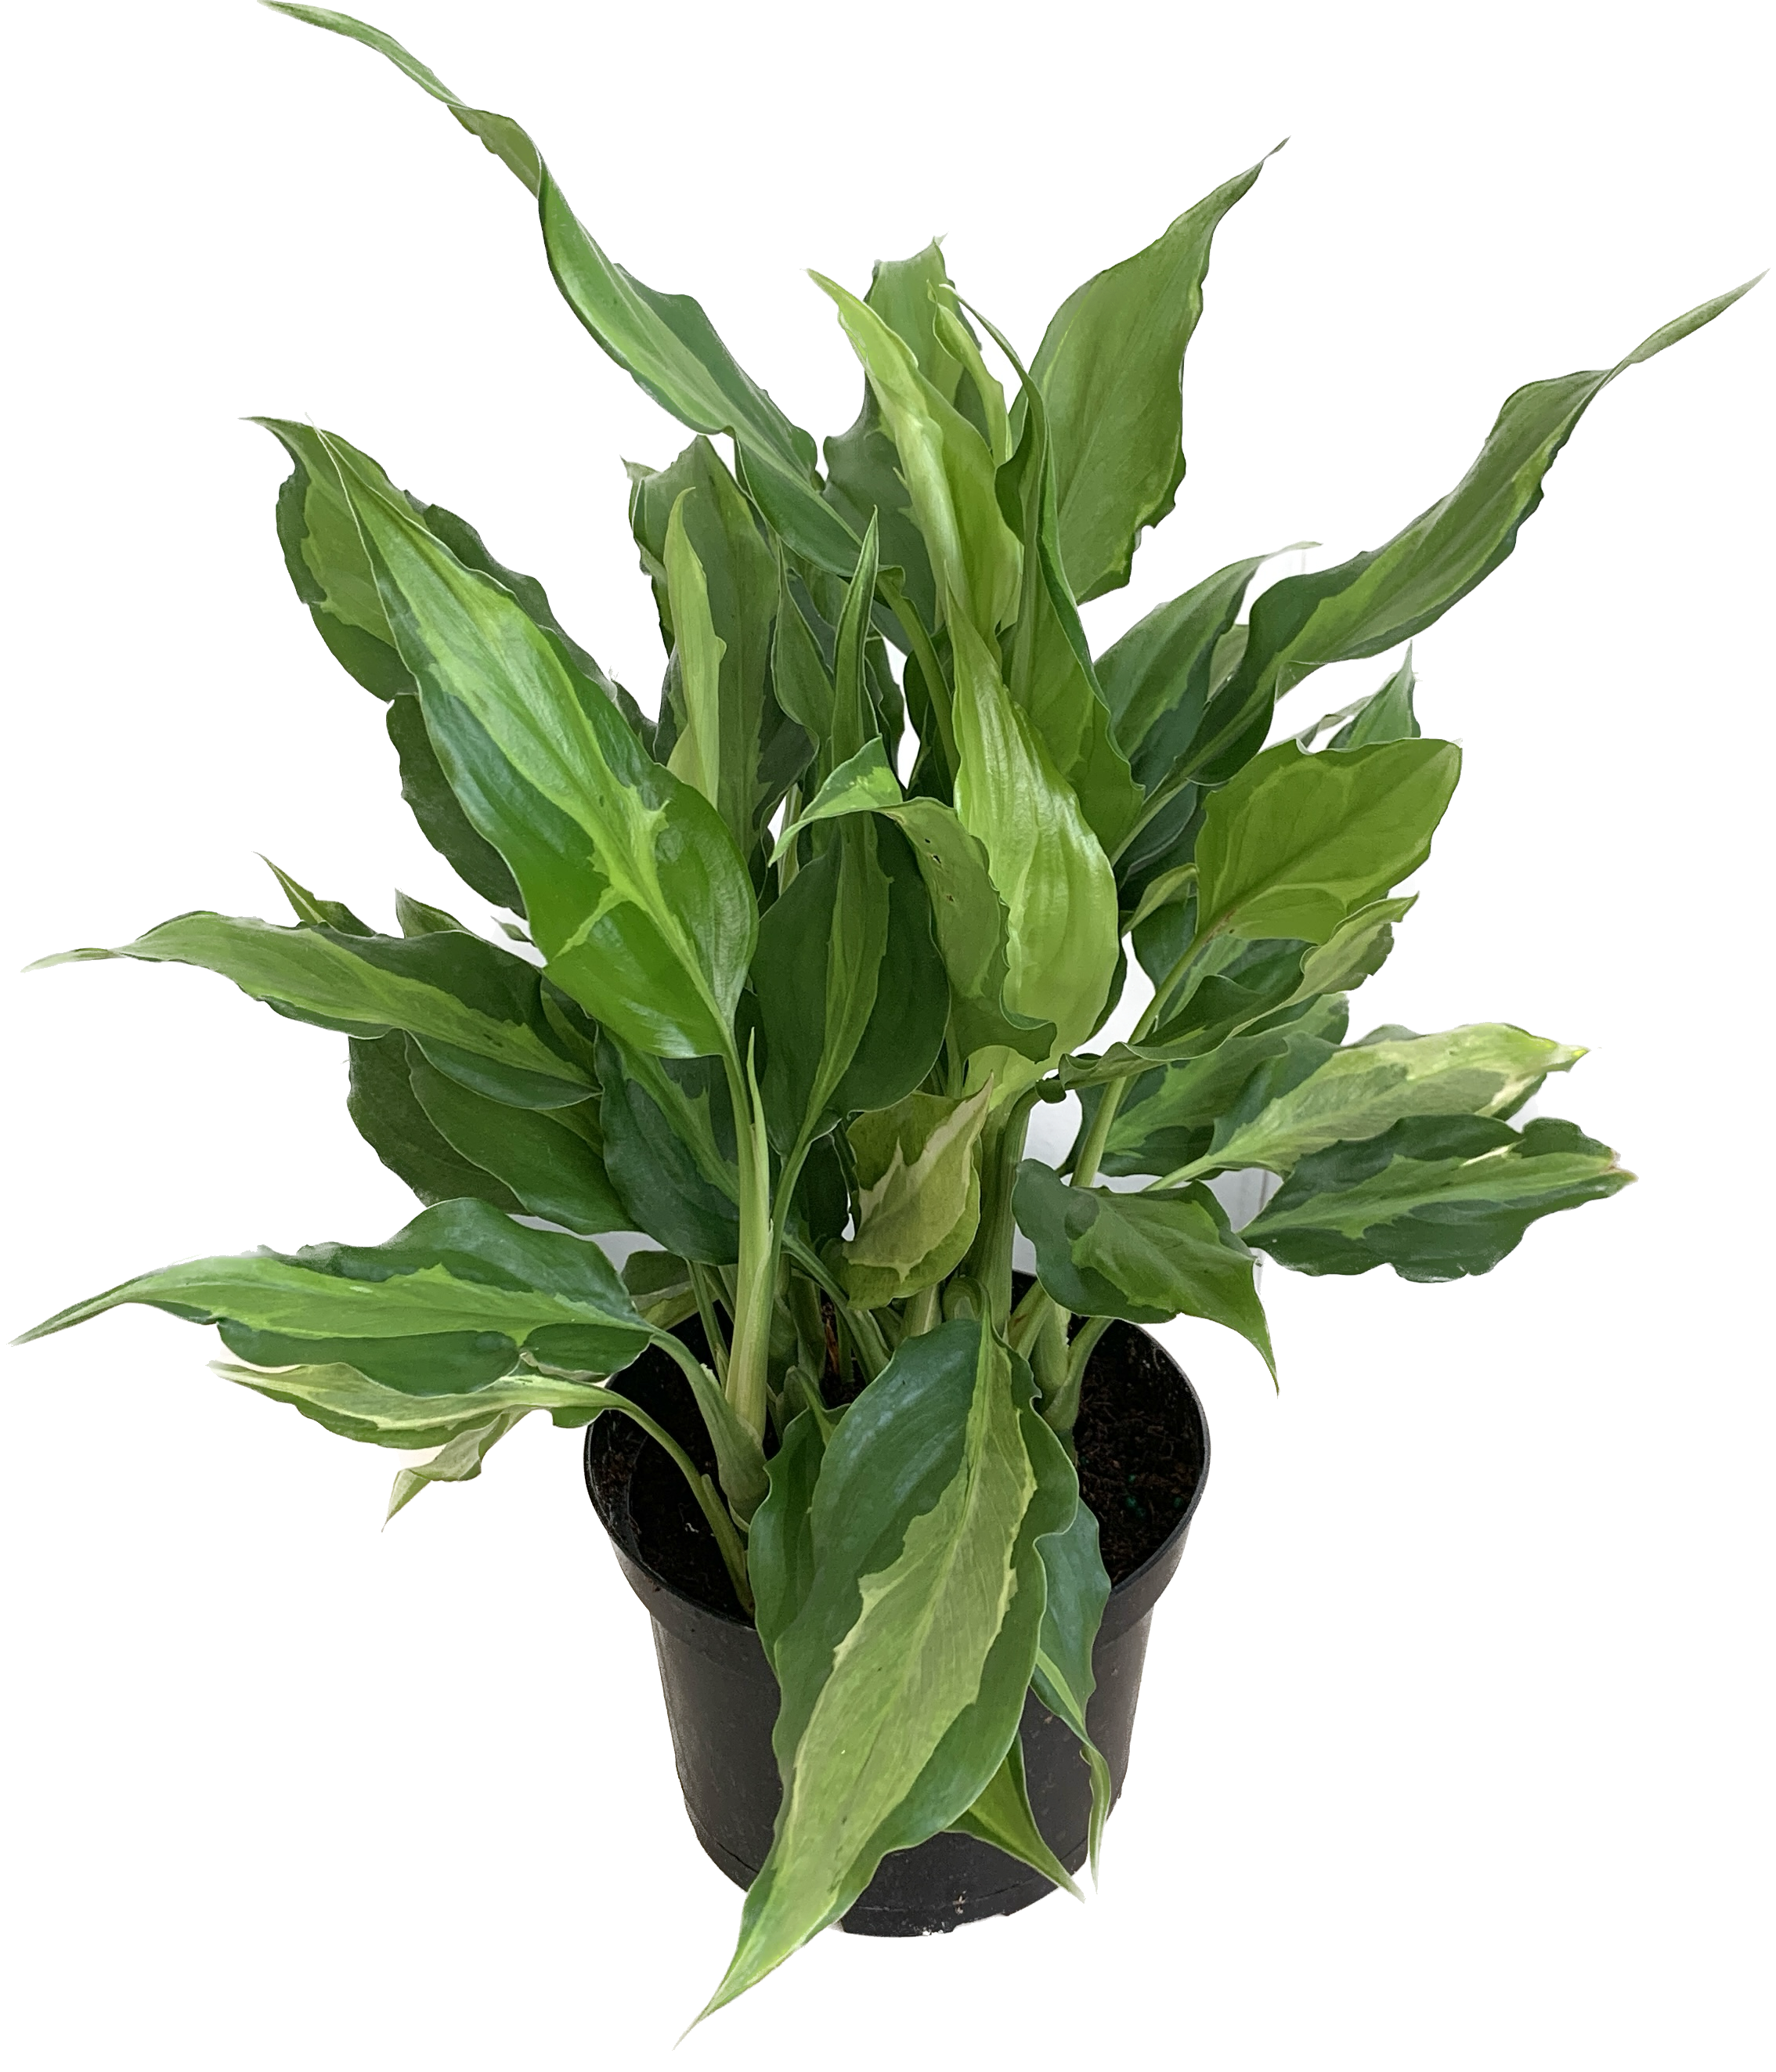 Chinese Evergreen, Aglaonema Commutatum Spathonema